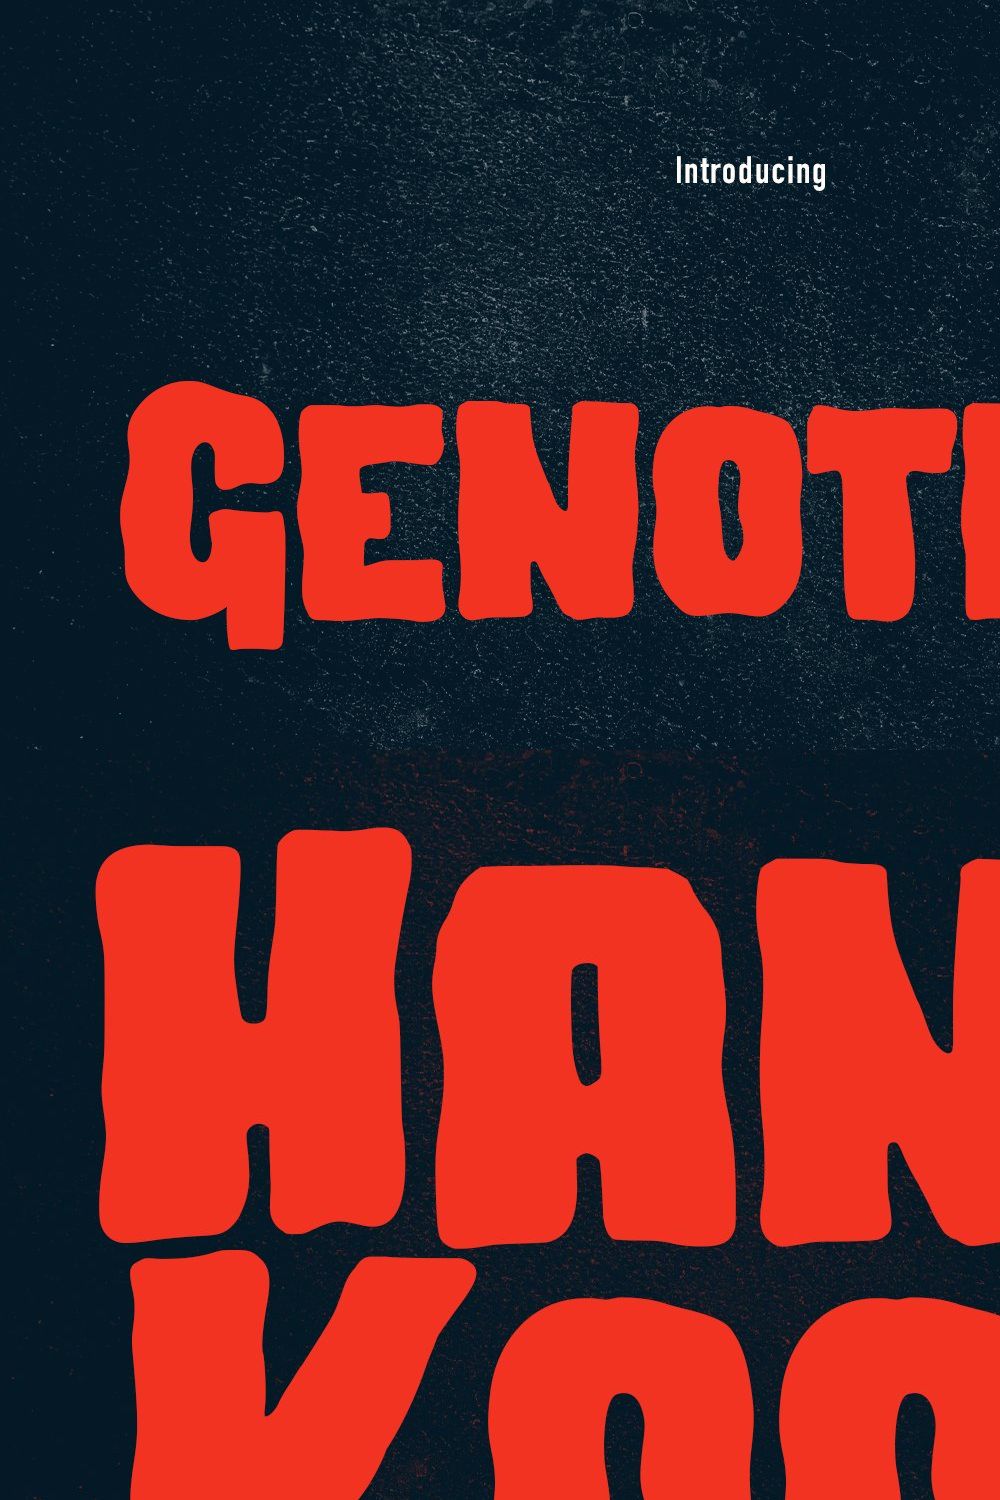 Genotics Handwritten Display Font pinterest preview image.